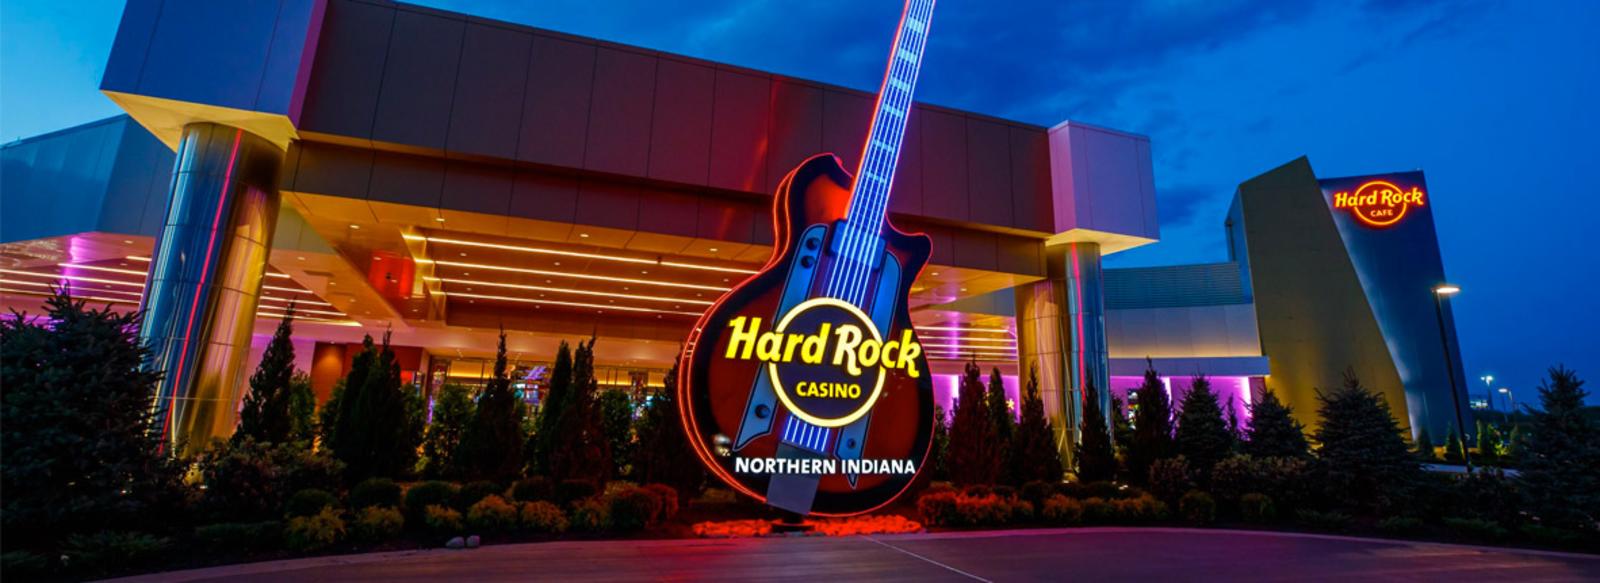 hard rock casino indiana location